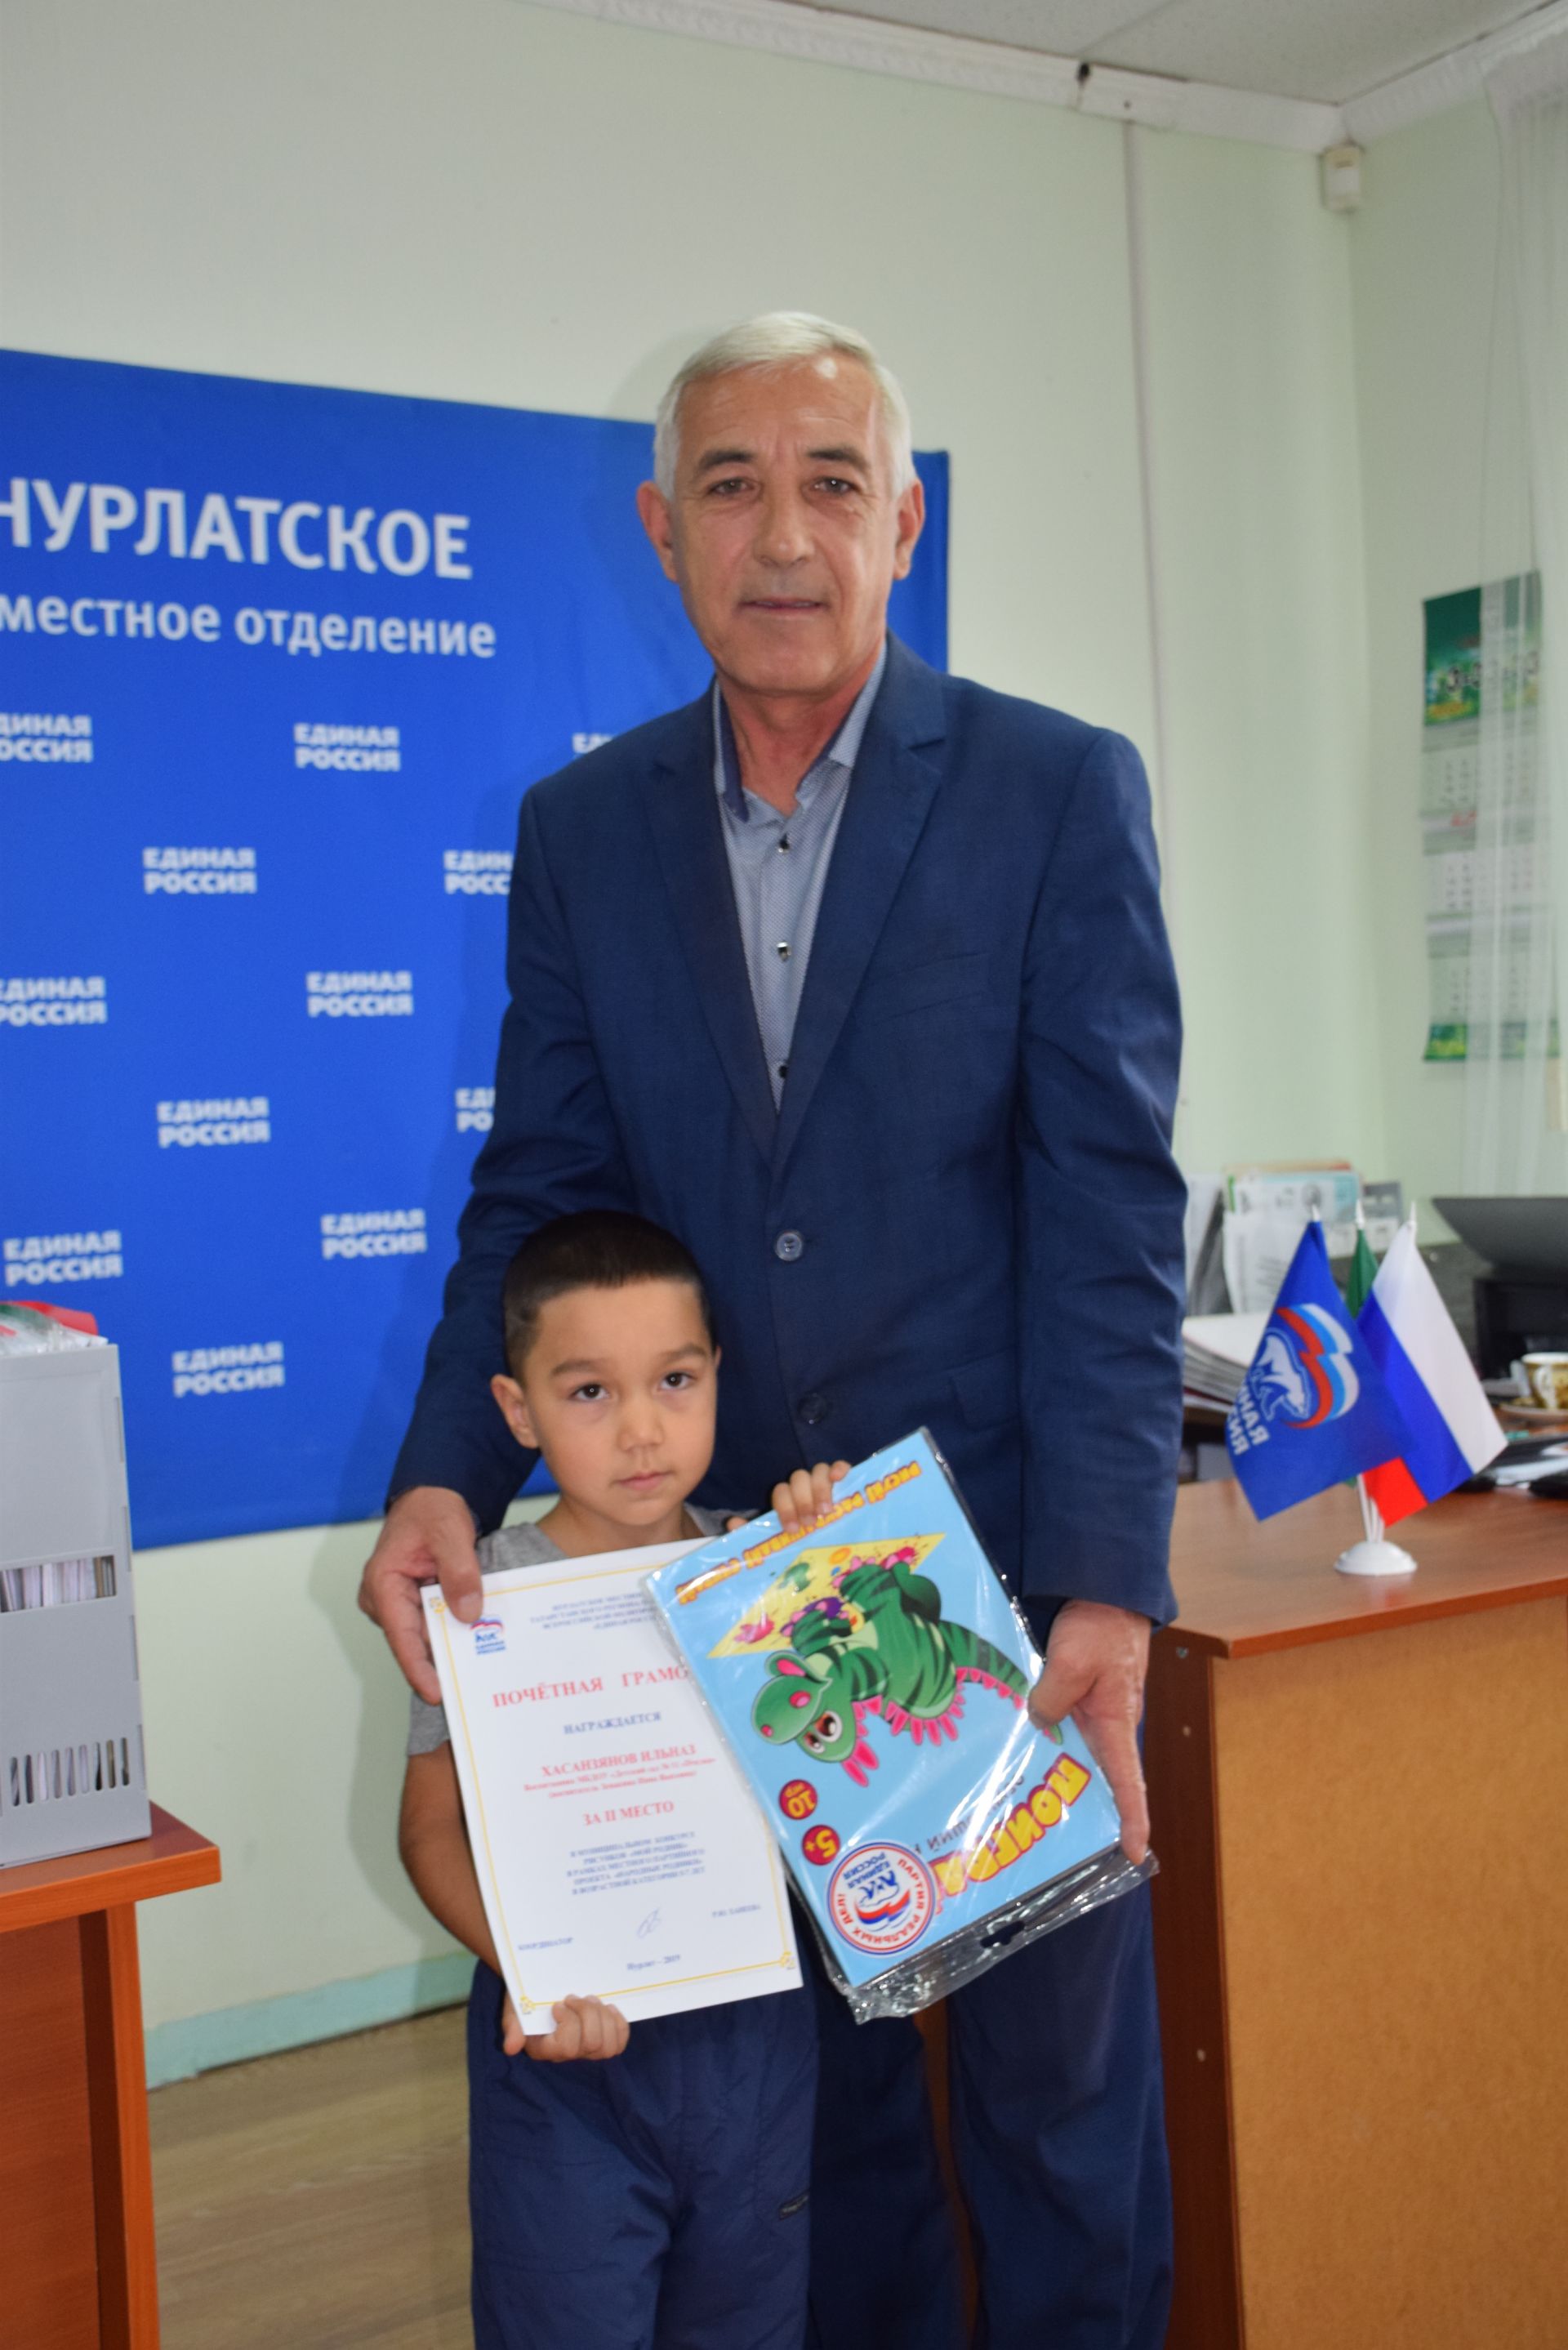 Нурлатские дети получили подарки от местного отделения партии «Единая Россия»